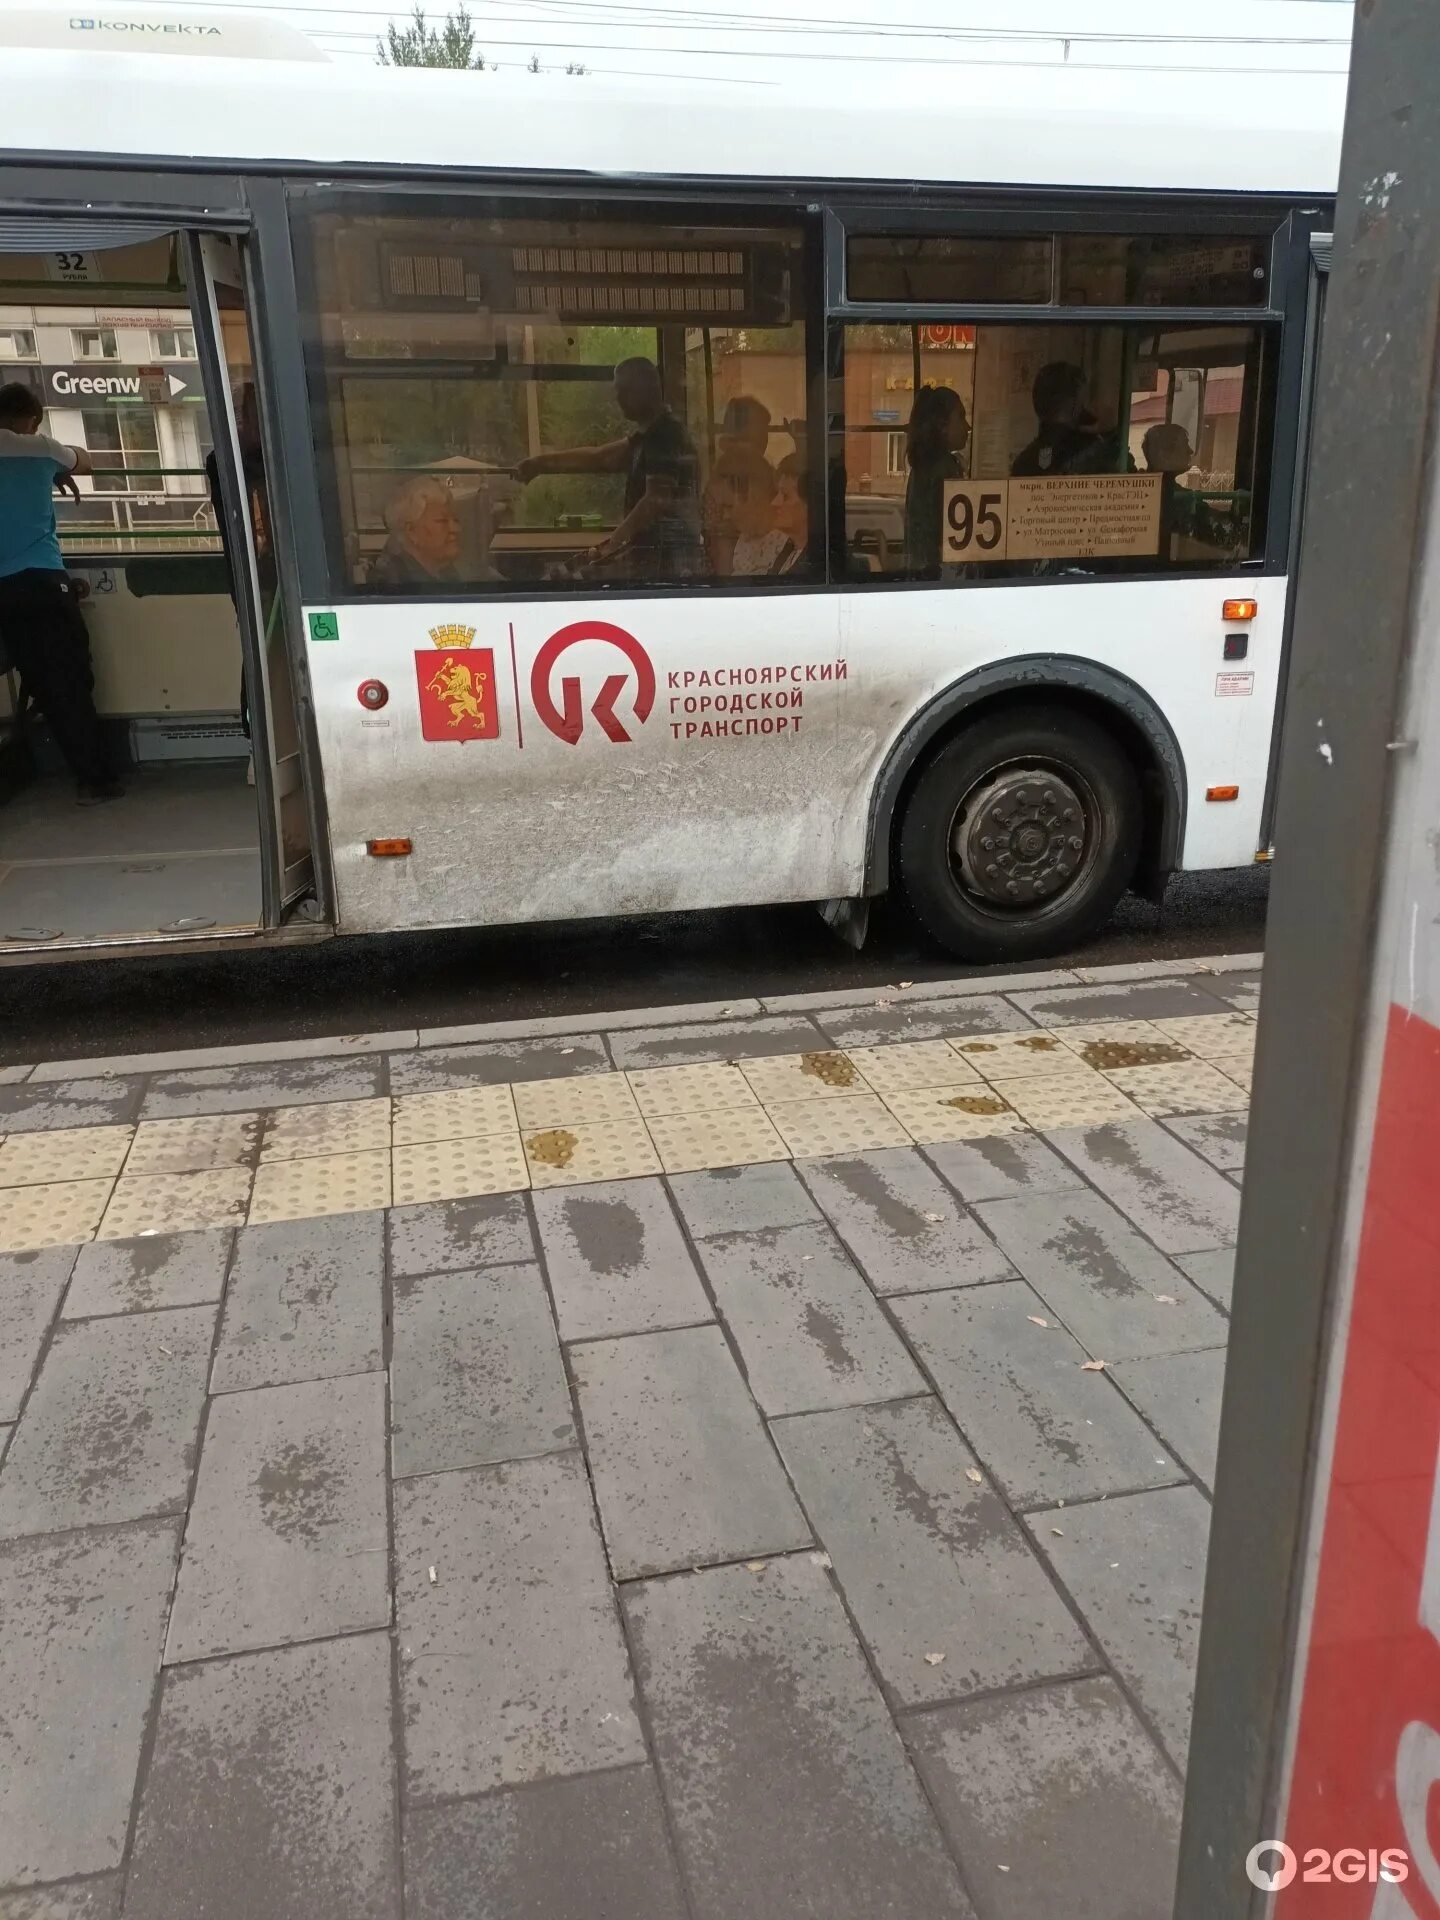 Маршрутный автобус. Автобус 2. 95 Автобус. Автобус подъезжает к остановке.